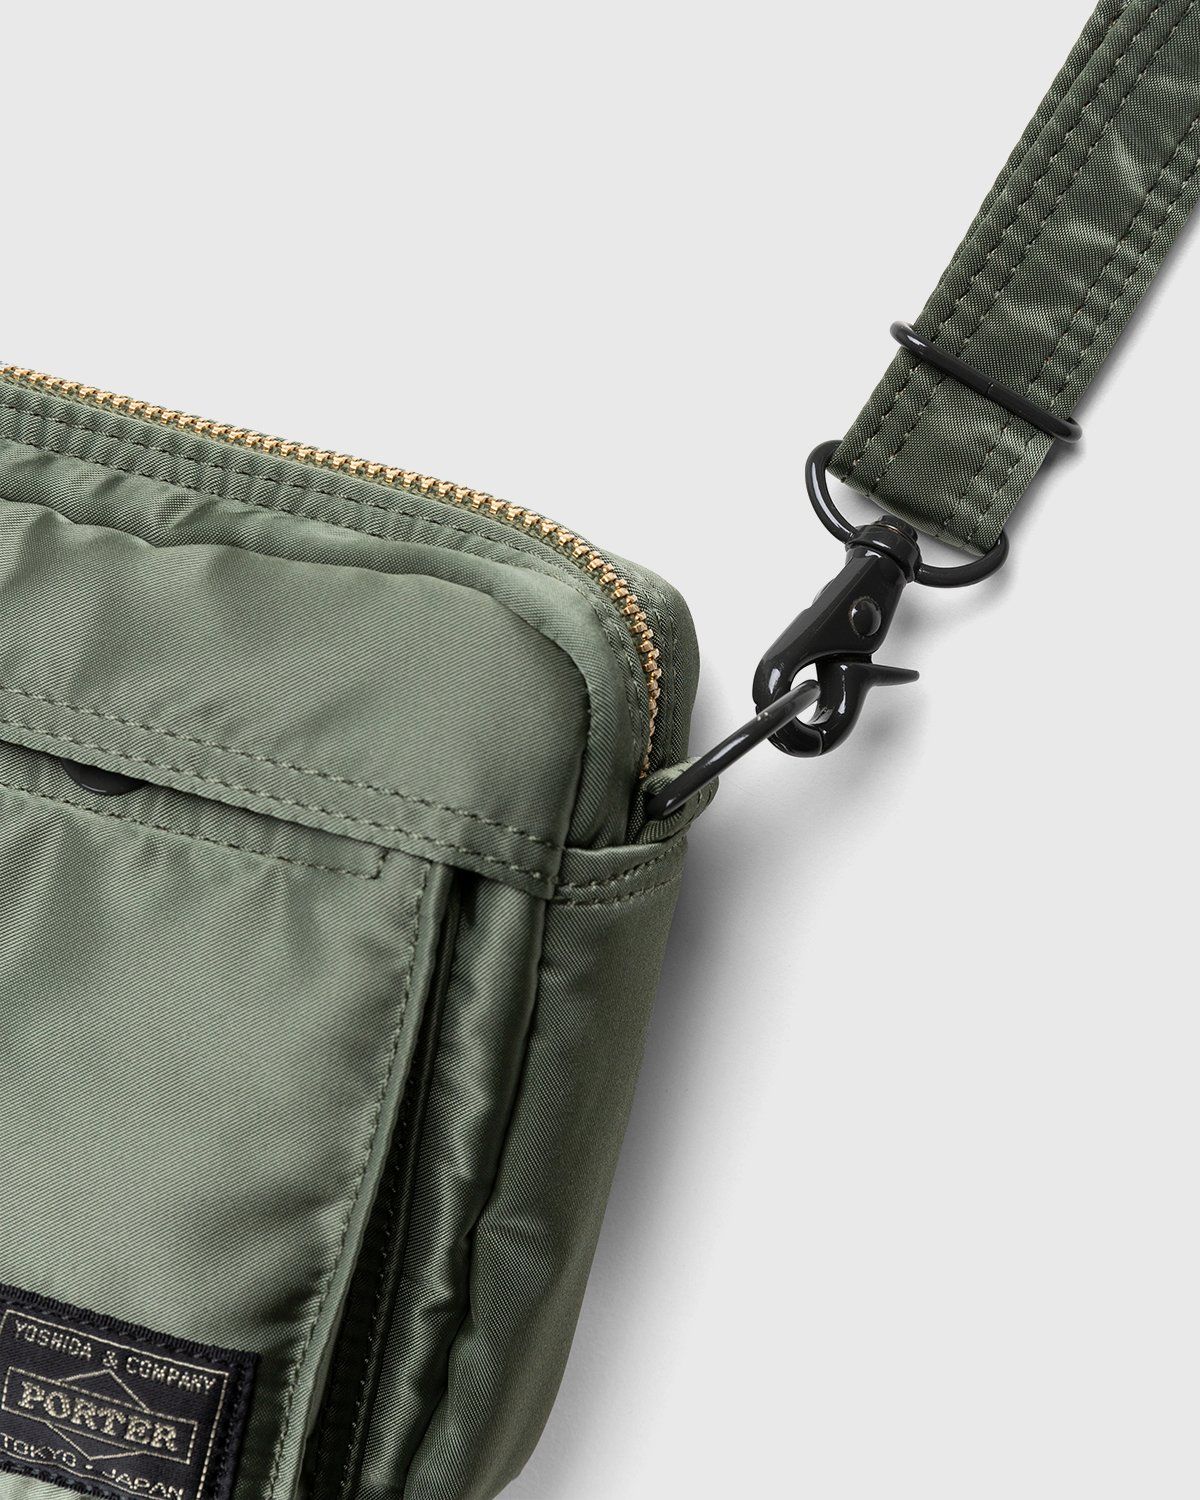 Porter-Yoshida & Co. – Tanker Shoulder Bag Sage Green - Bags - Green - Image 3